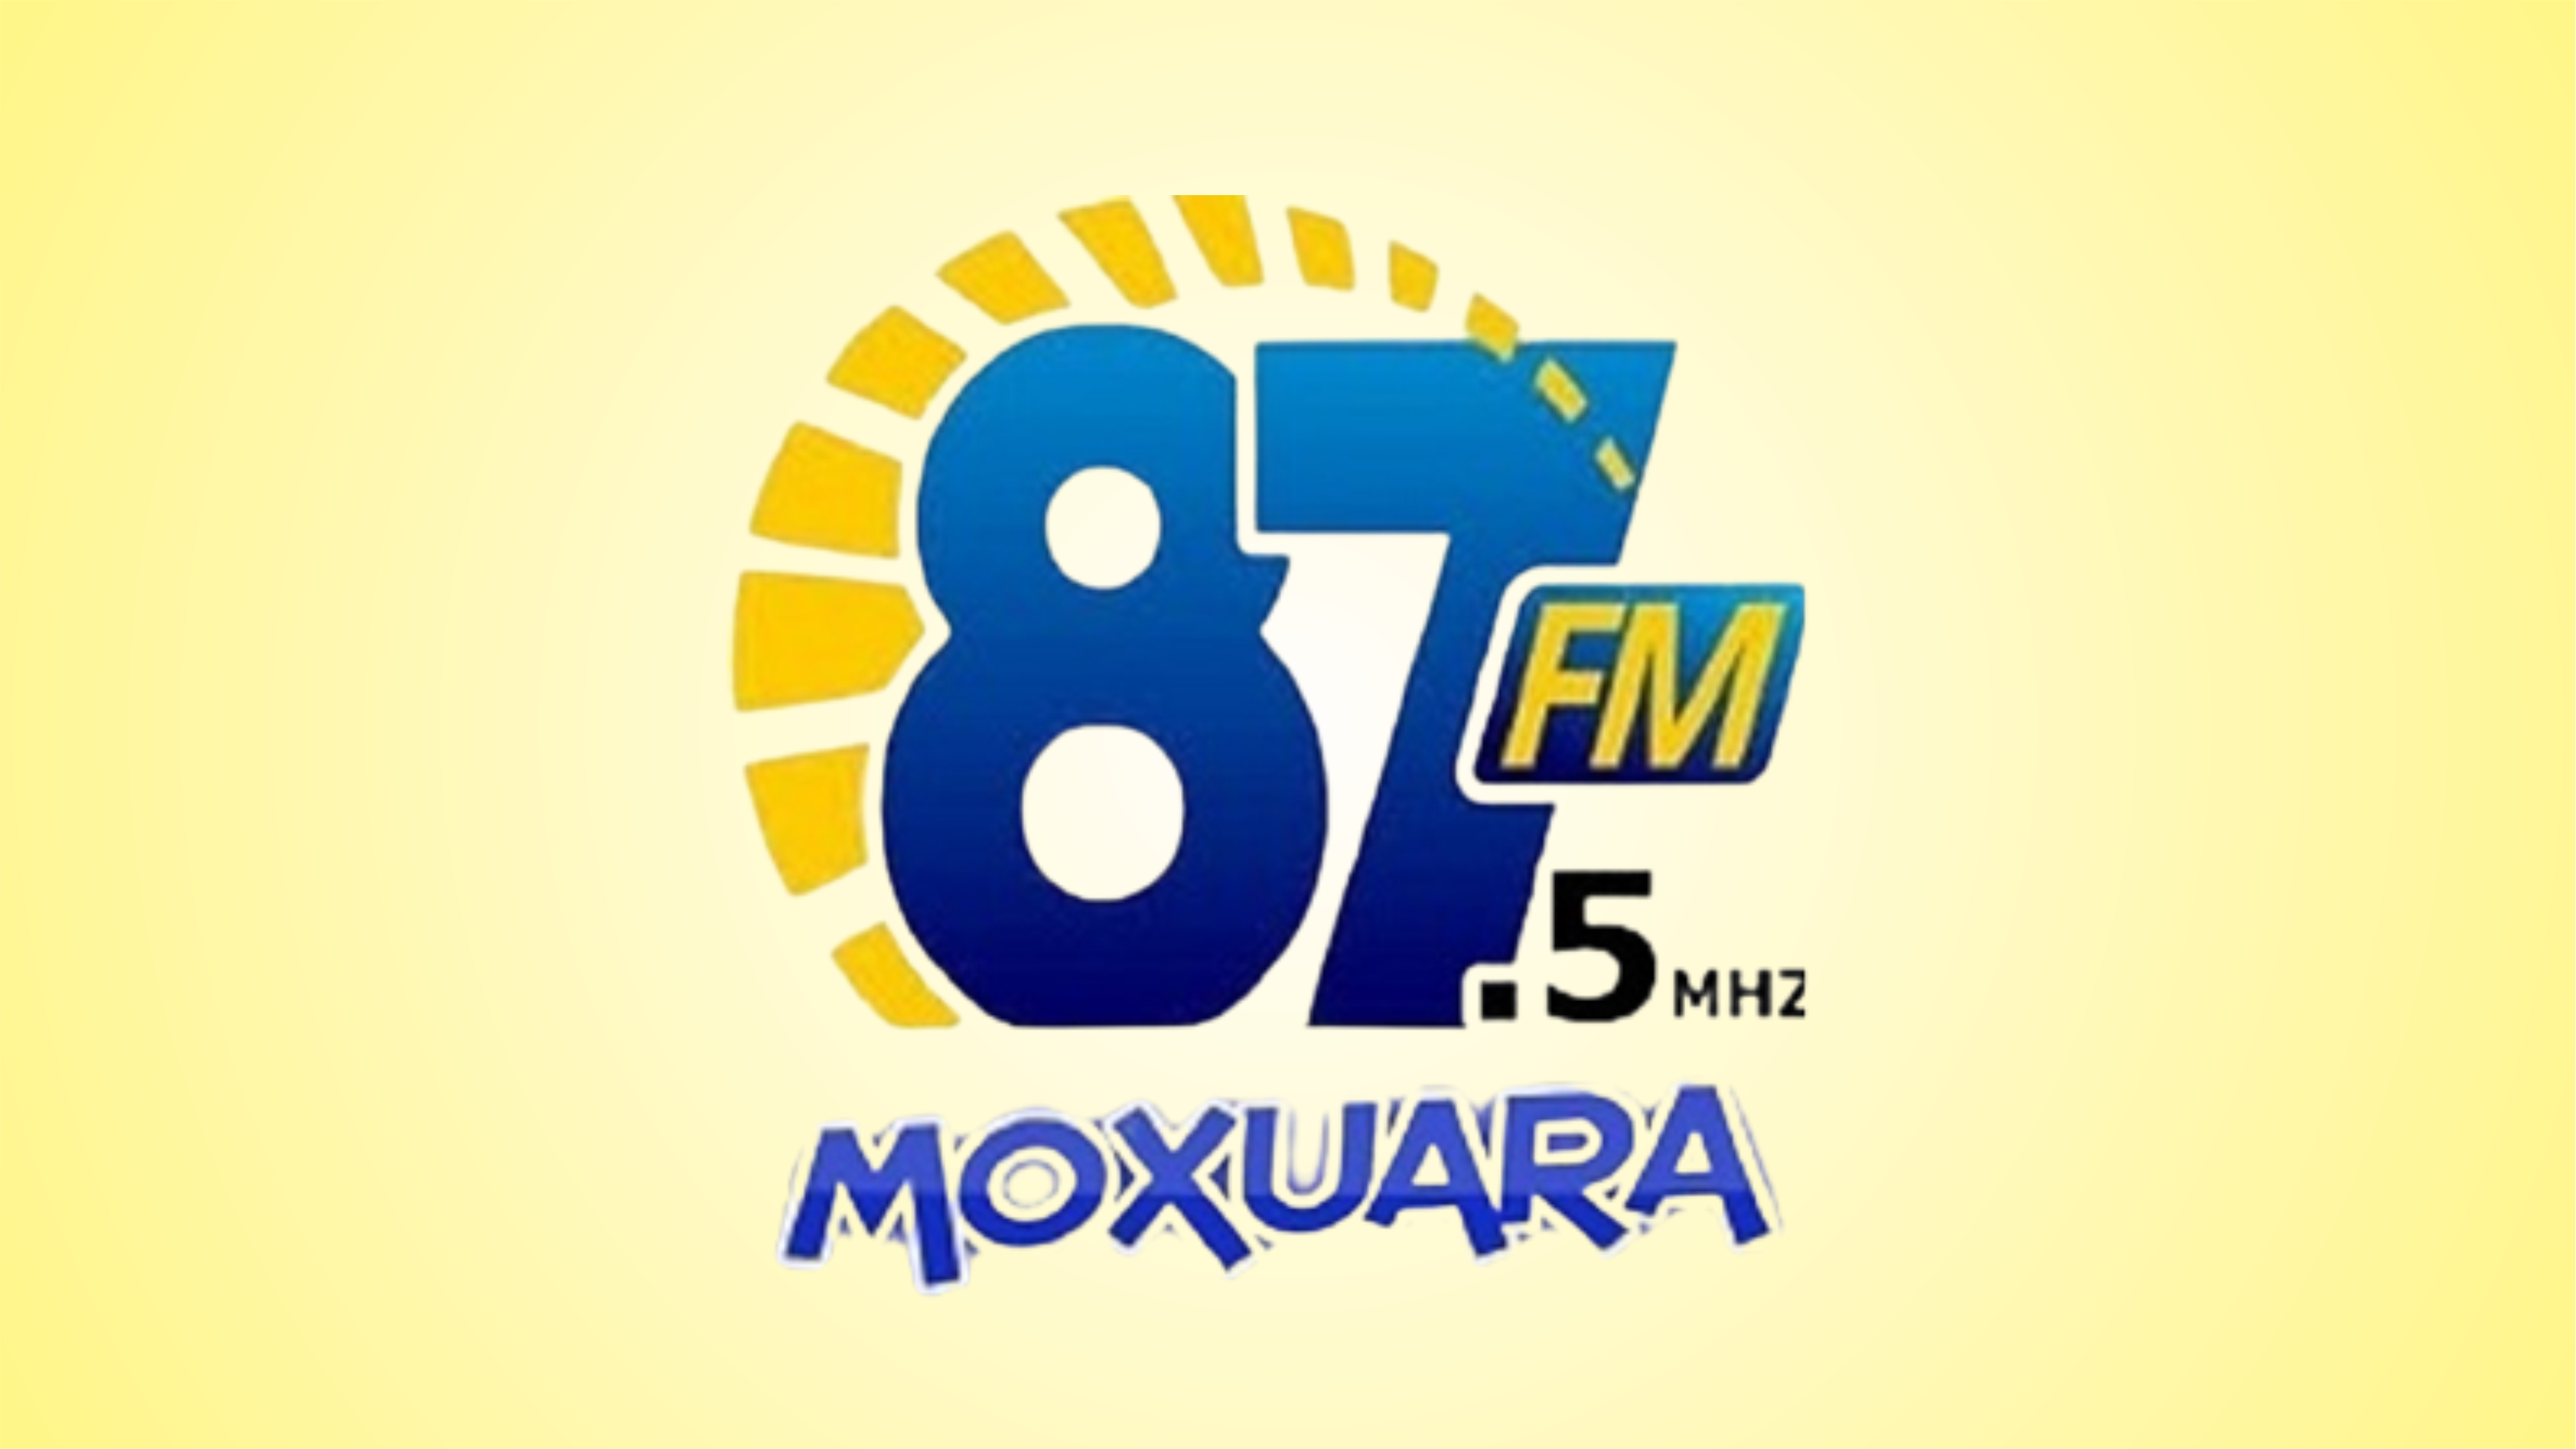 Rádio moxuara FM 87.5